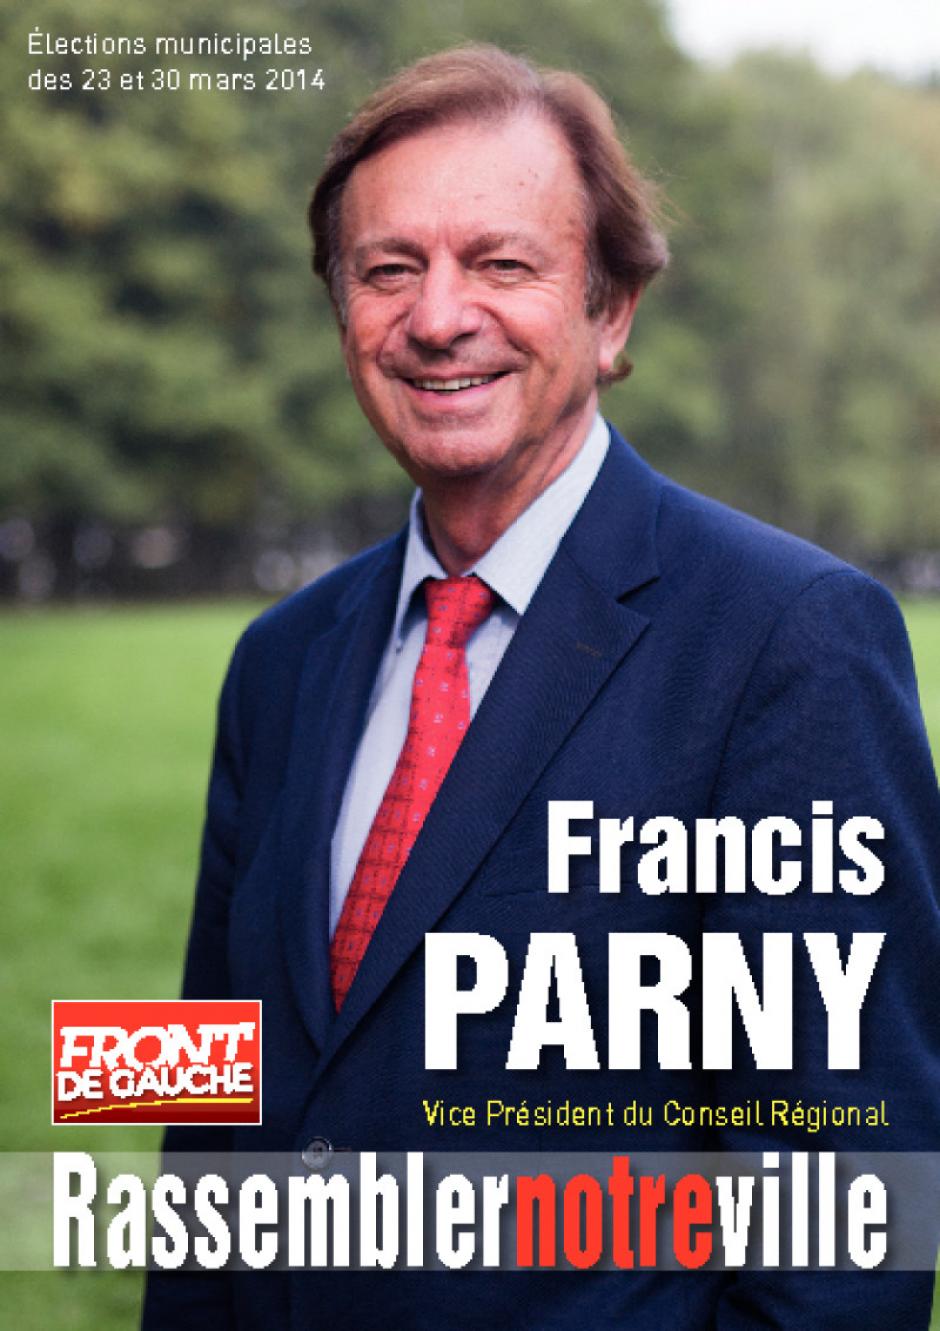 Garges : invitation aux voeux de Francis parny